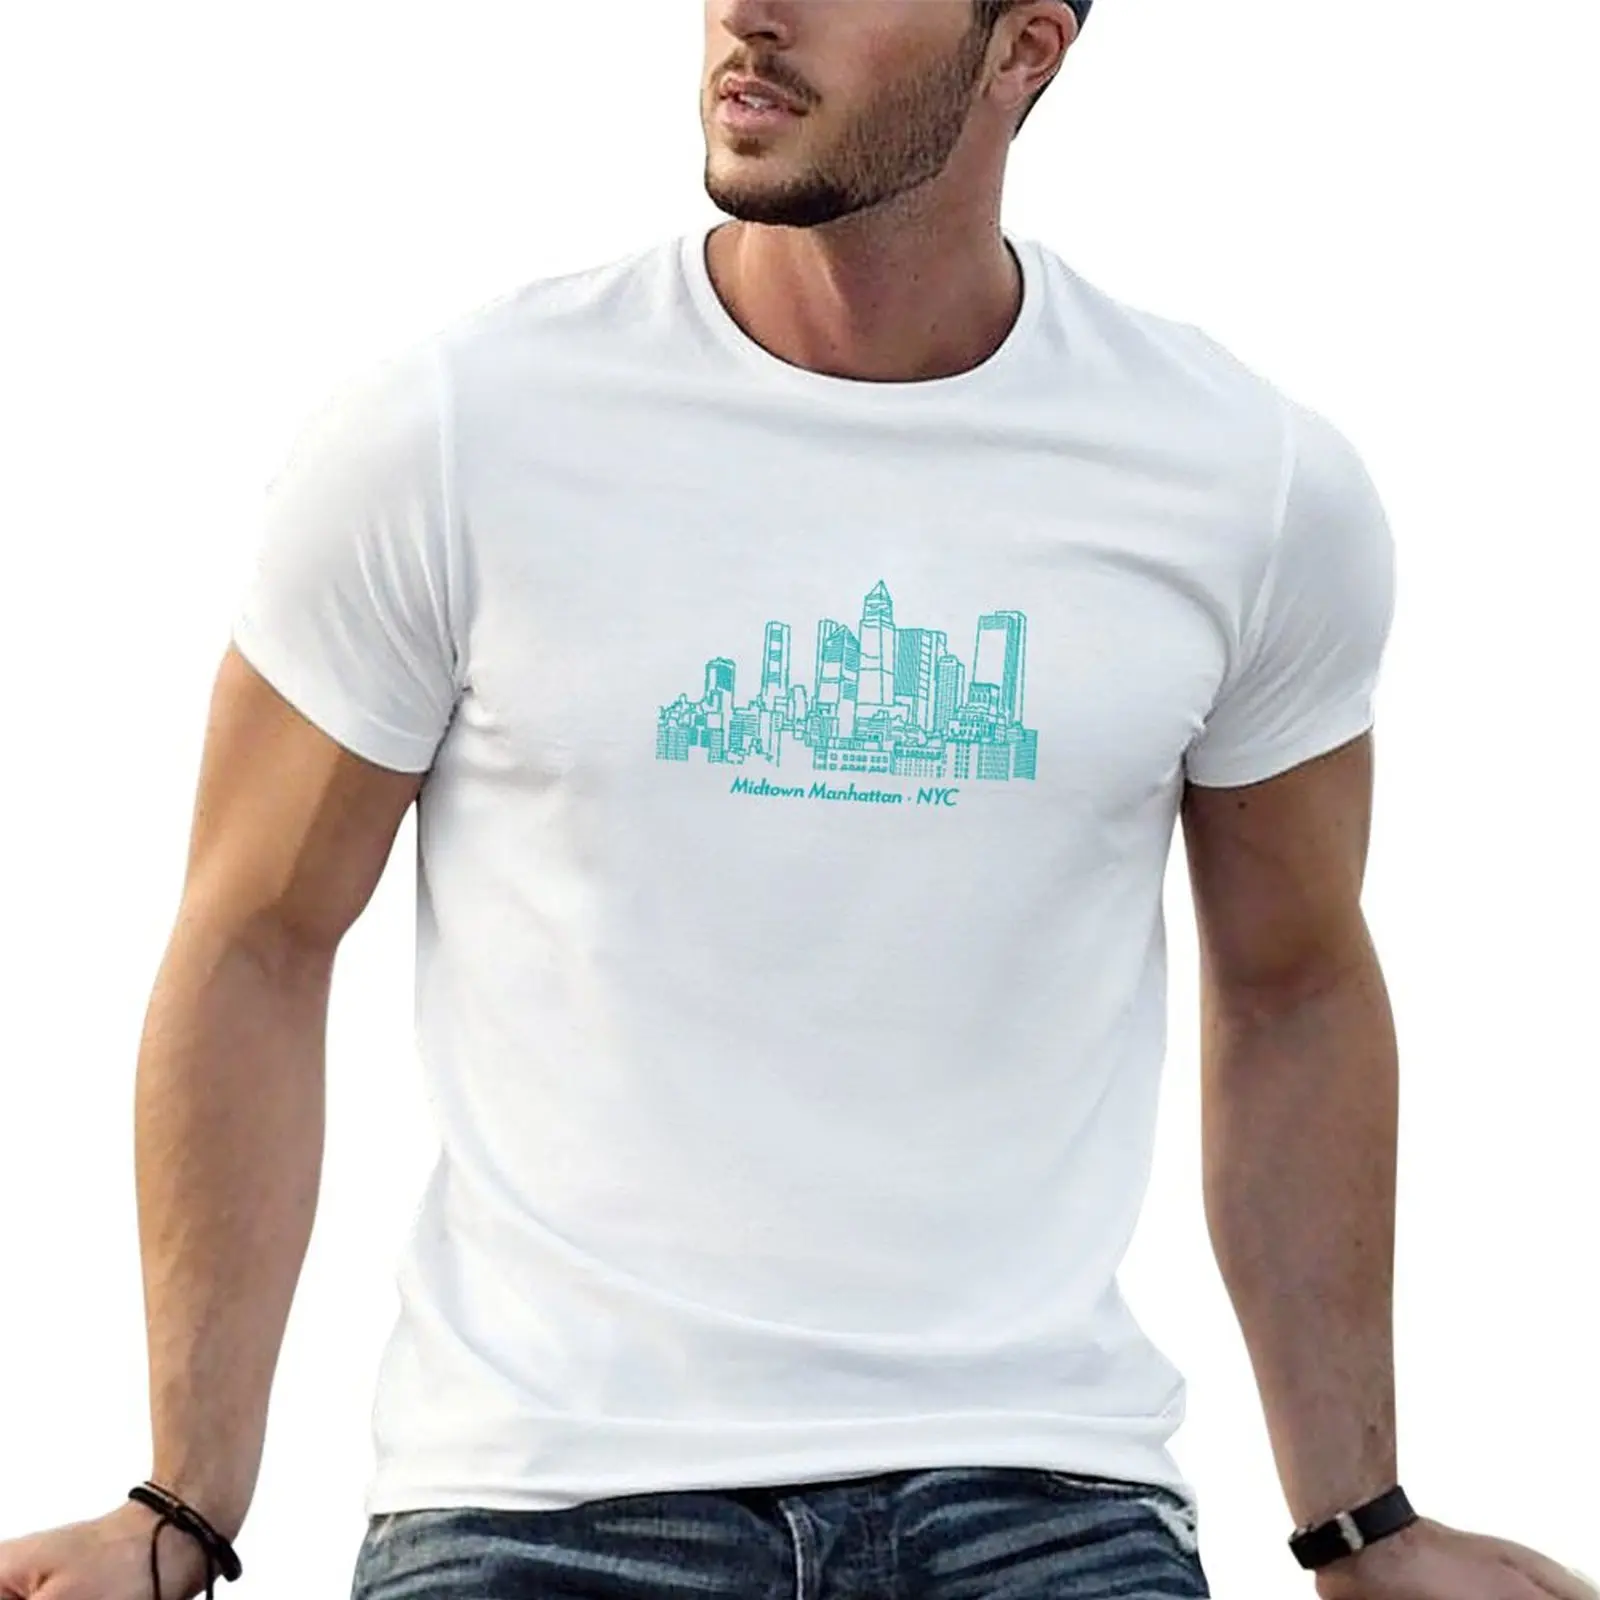 

Футболка Midtown с манхэттеном, красивые летние топы, тяжелые мужские простые футболки